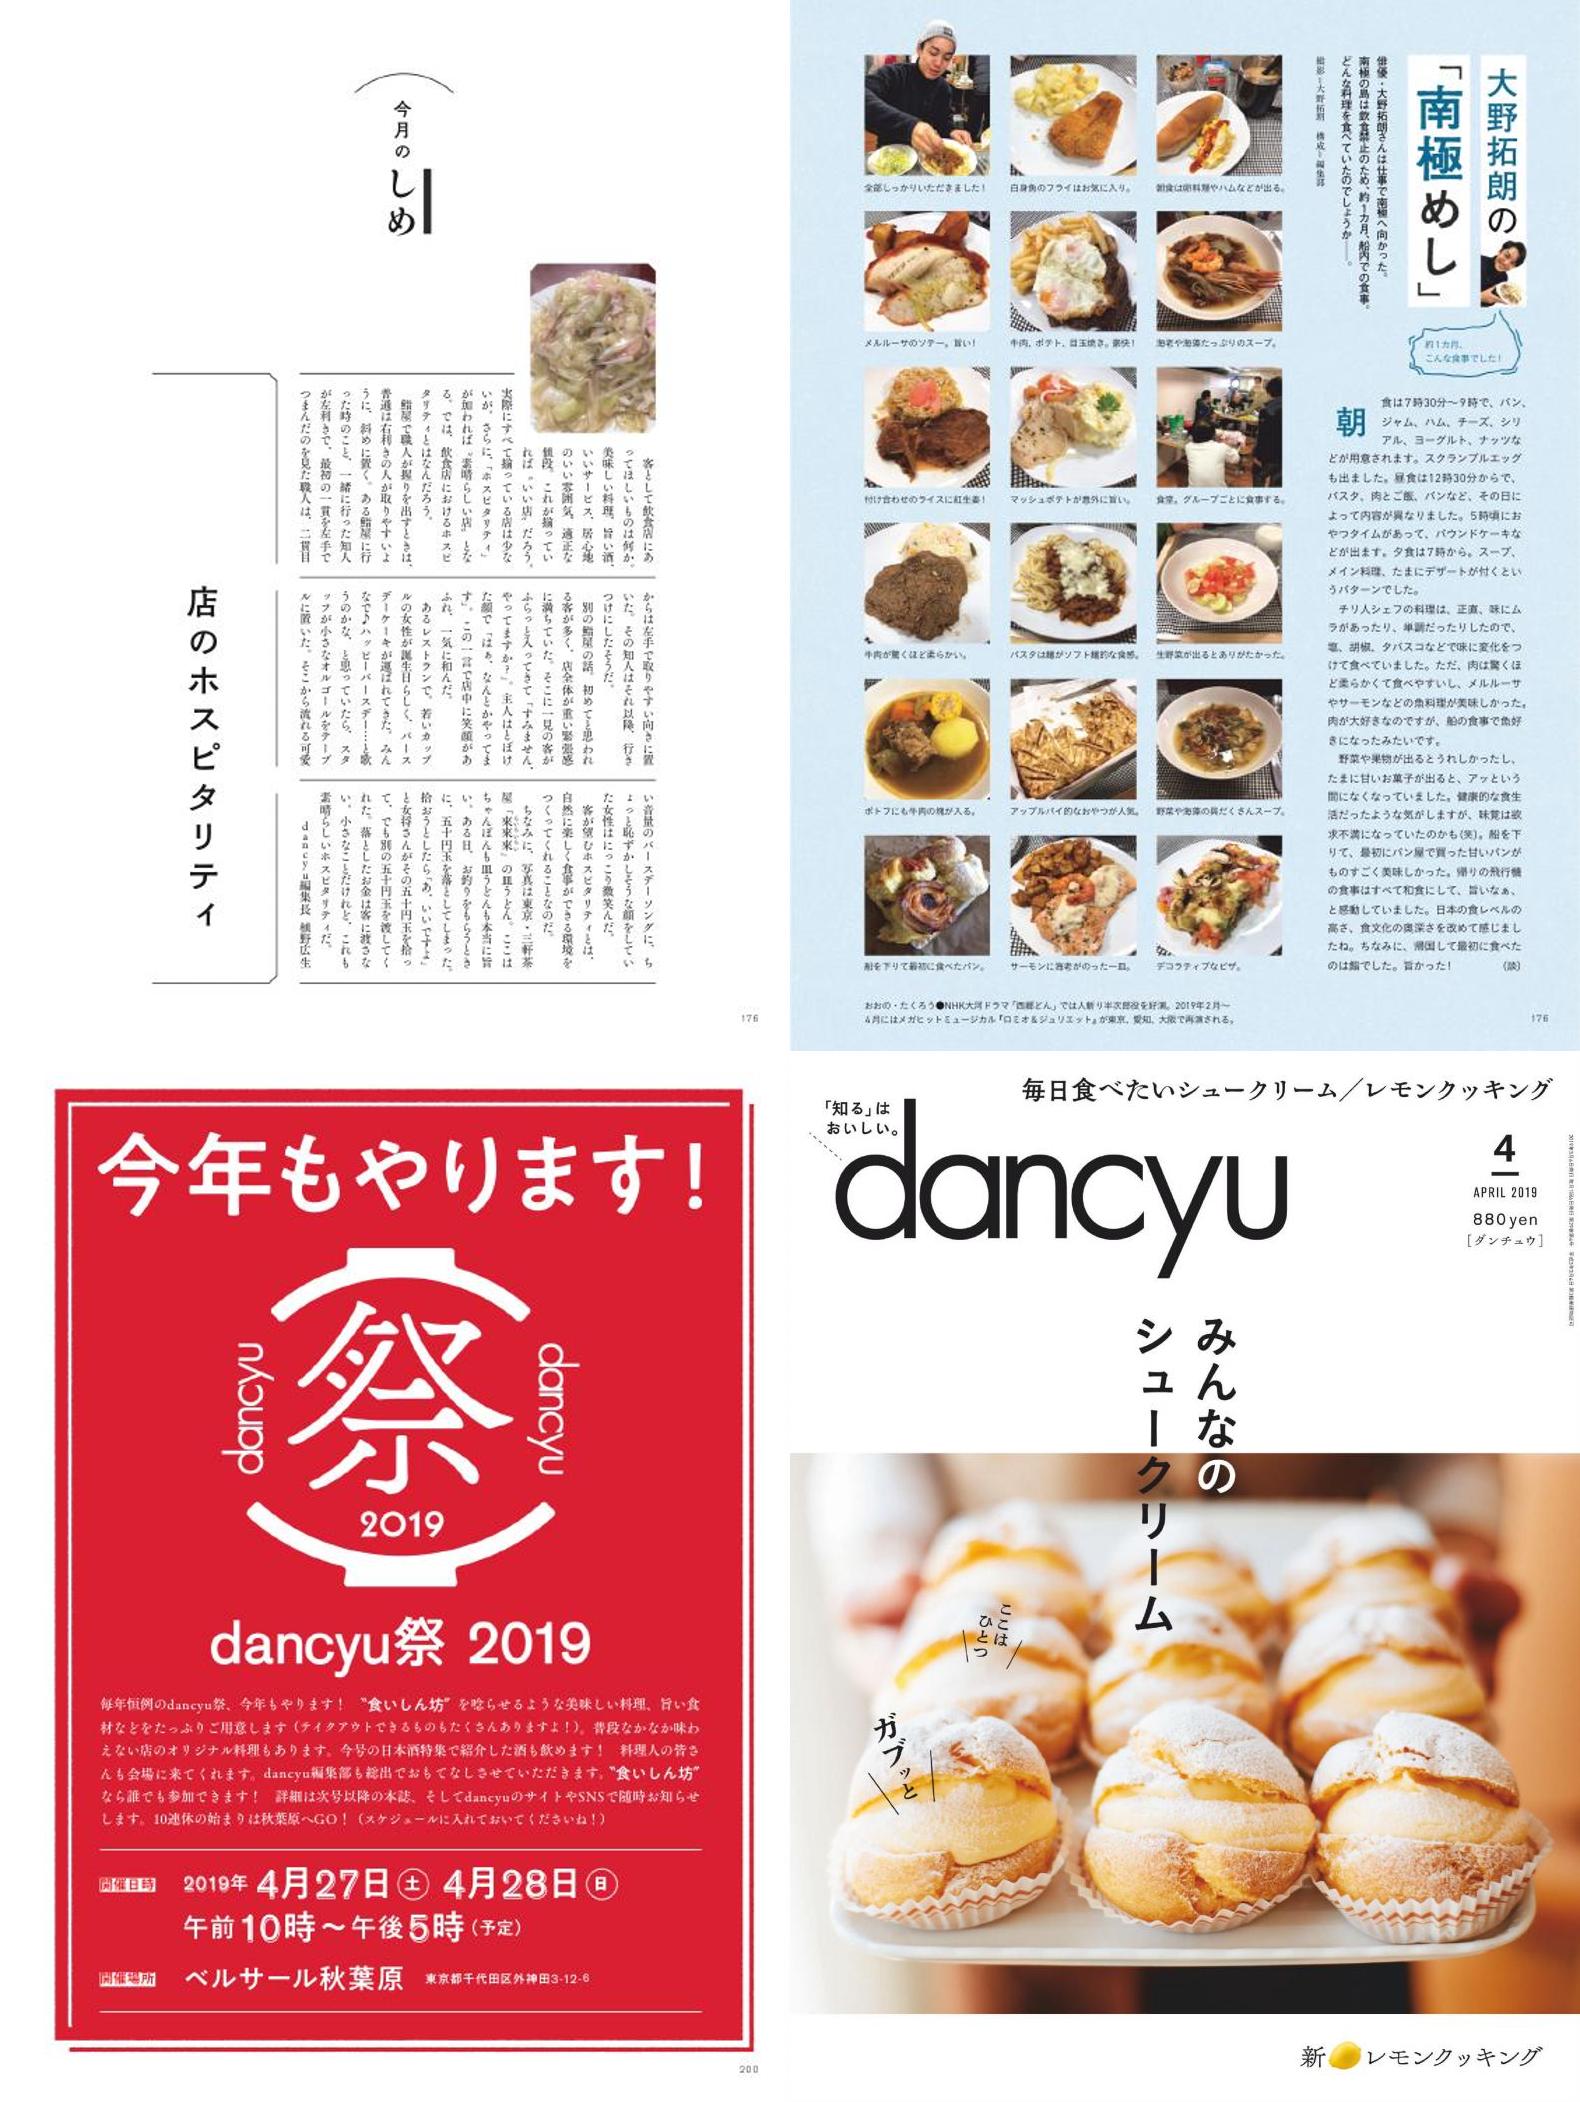 [日本]dancyu 料理之友杂志 2019年订阅 电子版PDF下载